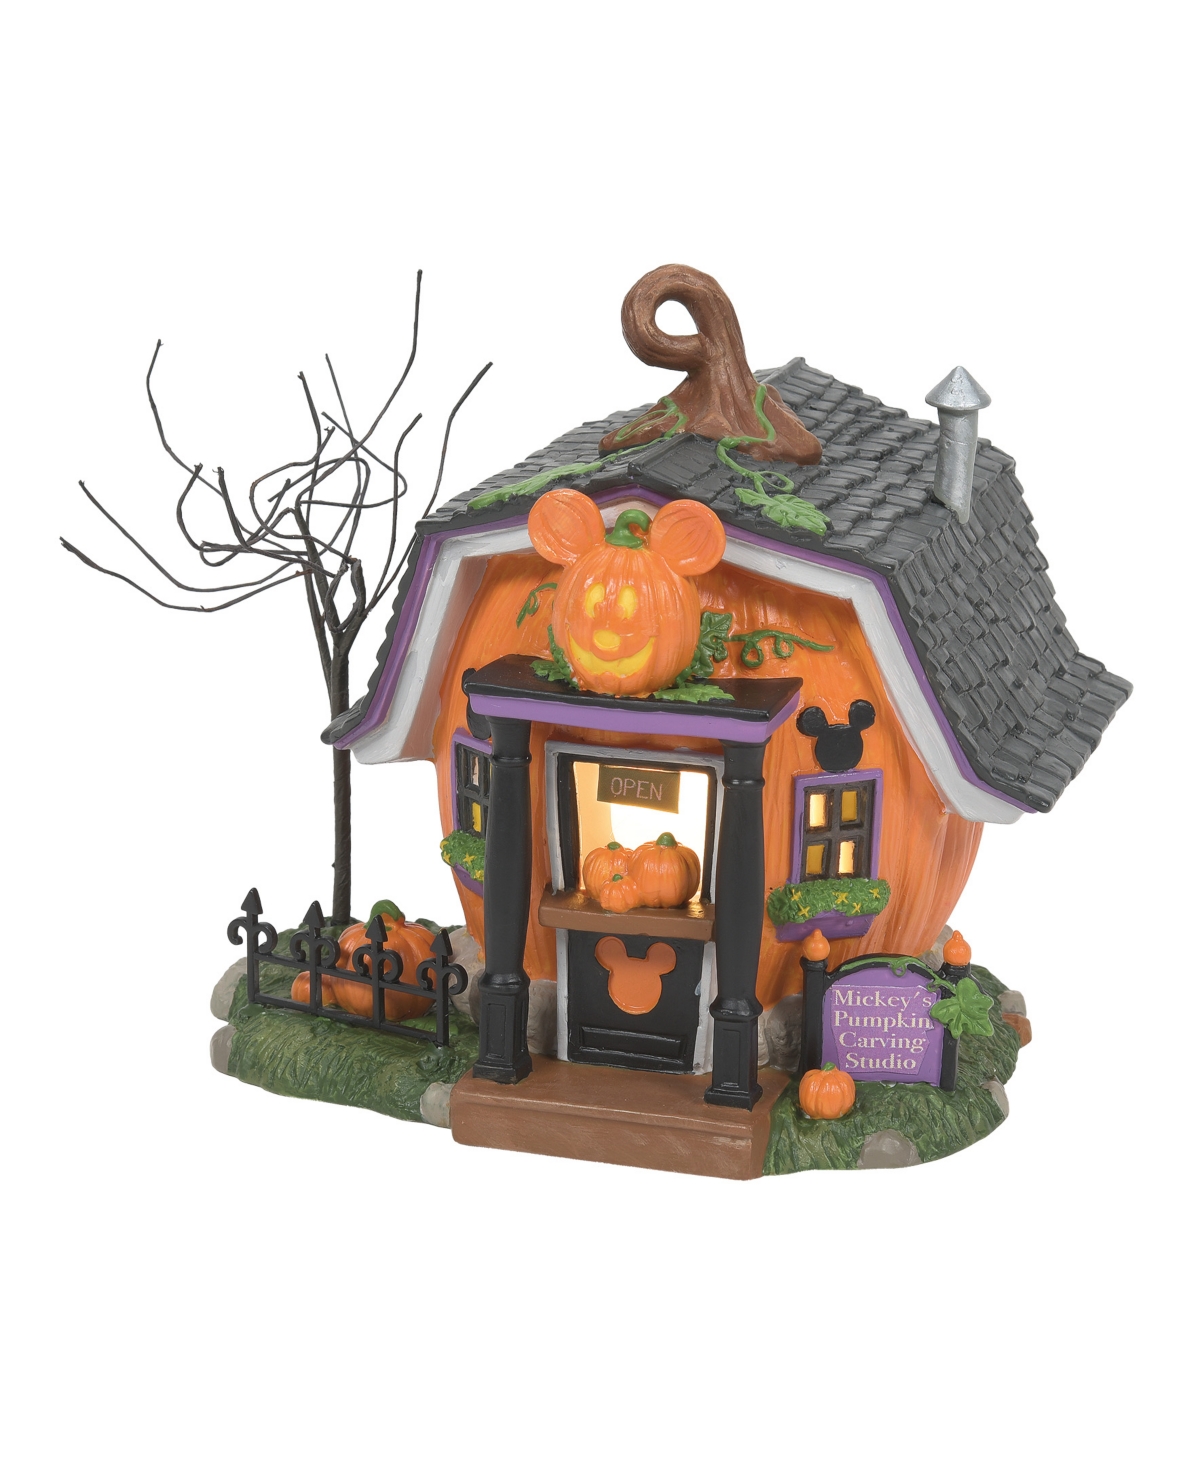 Pumpkin Town Carving Studio - Multi